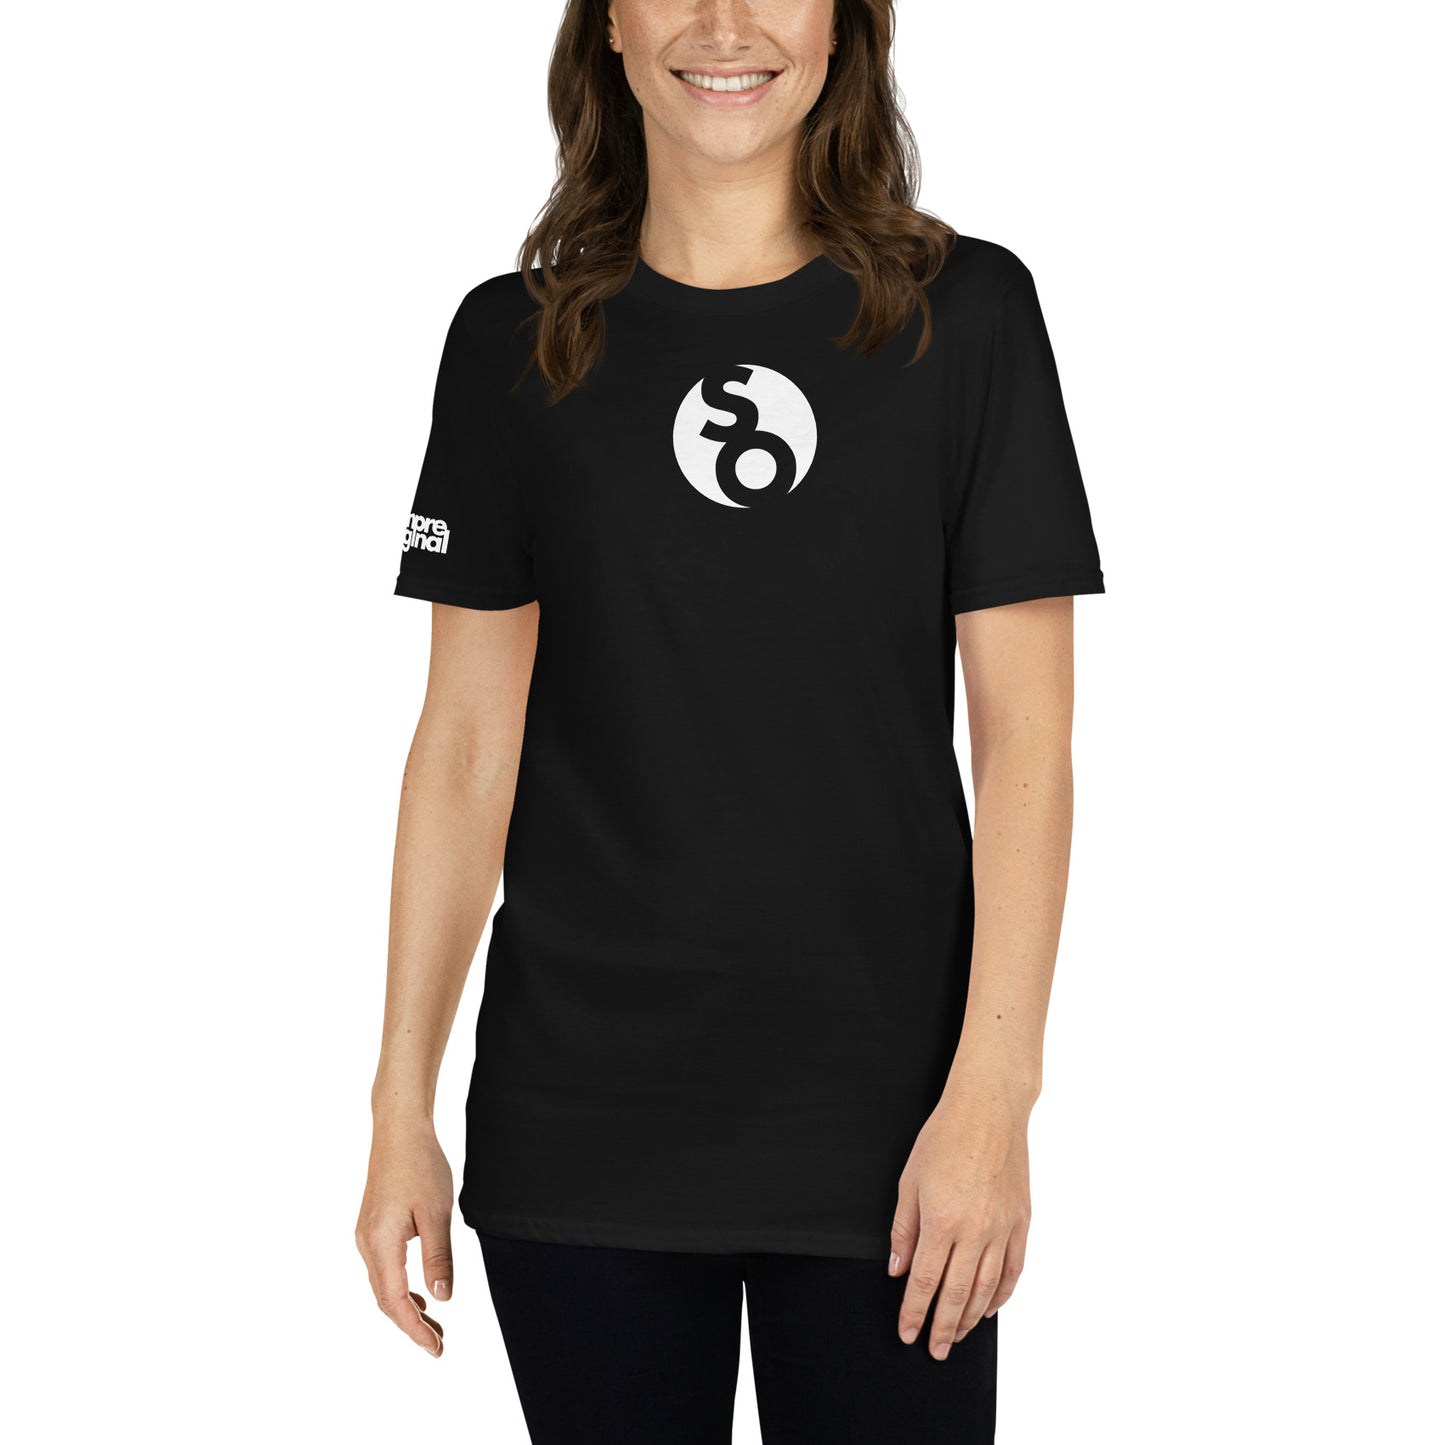 mujer con camiseta con logo so de siempre original en color negro